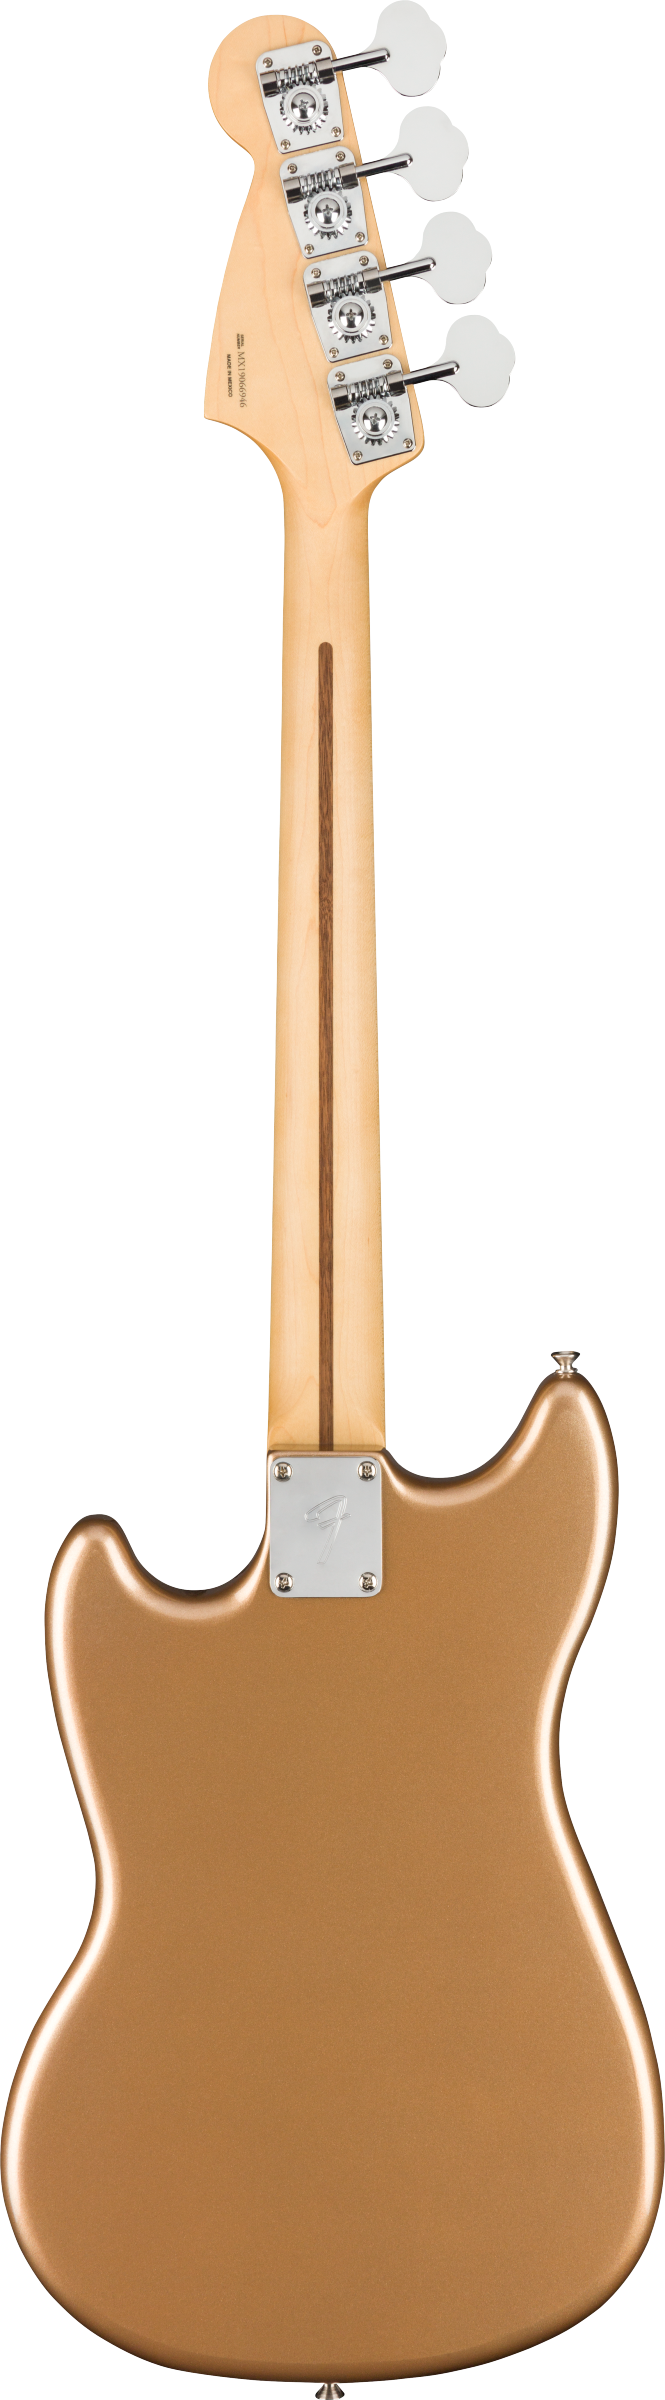 Fender Player Mustang® Bass PJ with Pau Ferro Fingerboard in Firemist Gold